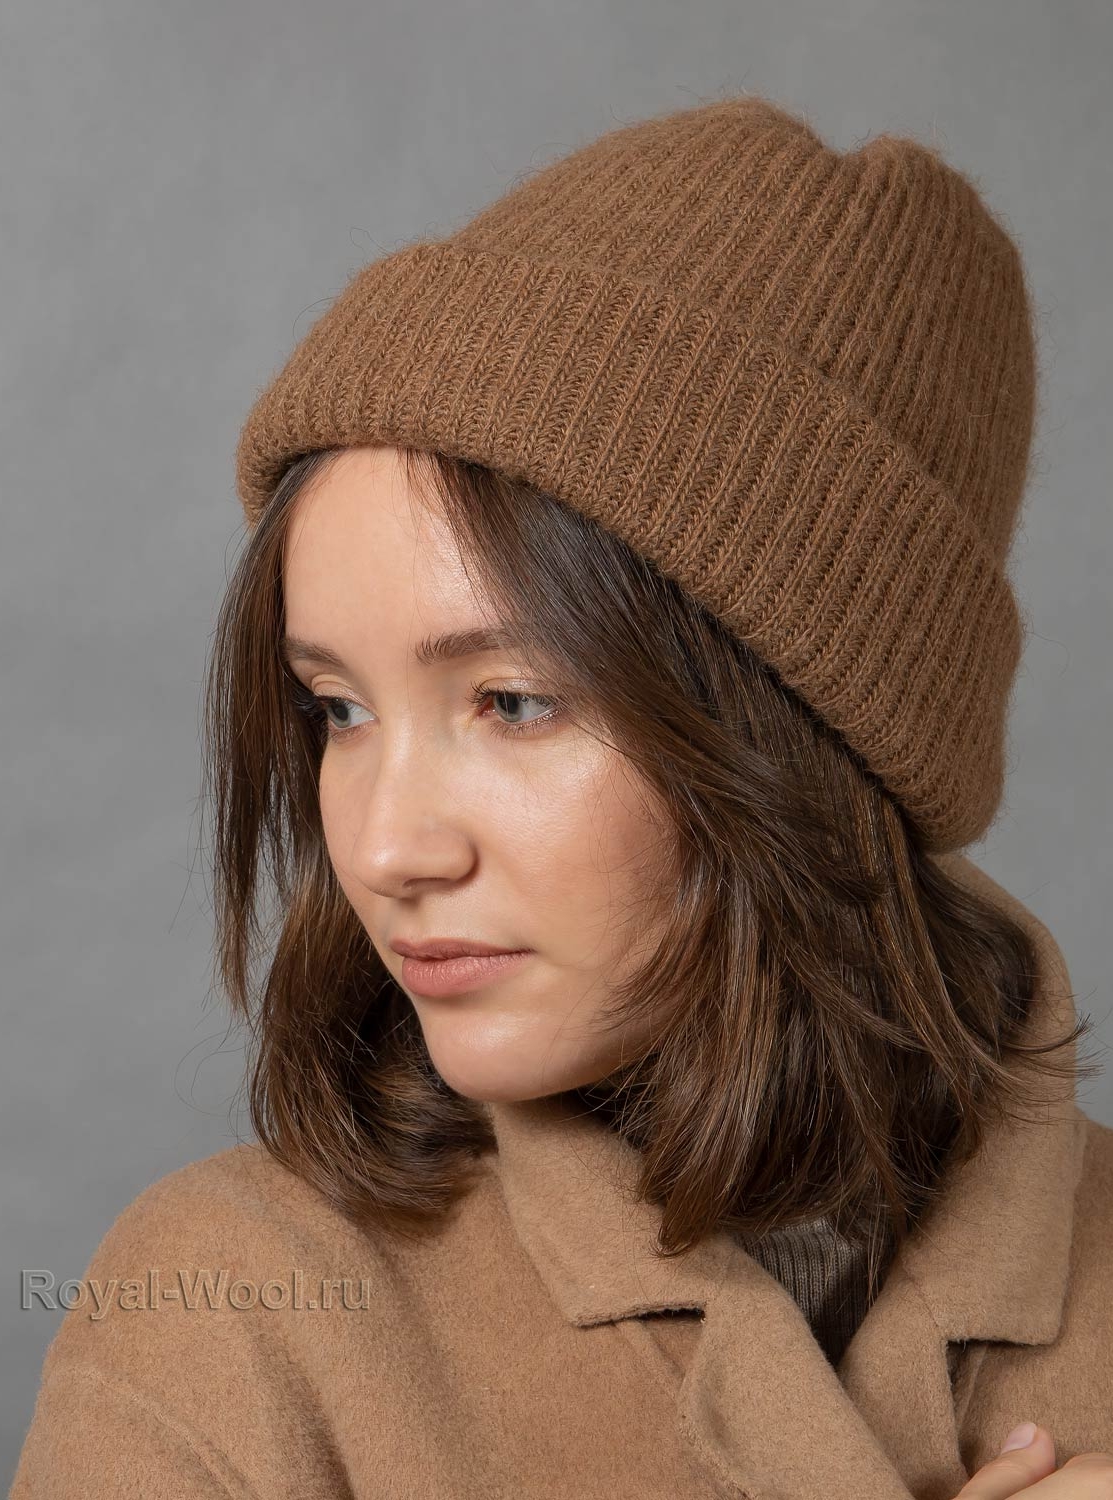 Женская шапка крупной вязки: схема как делать спицами